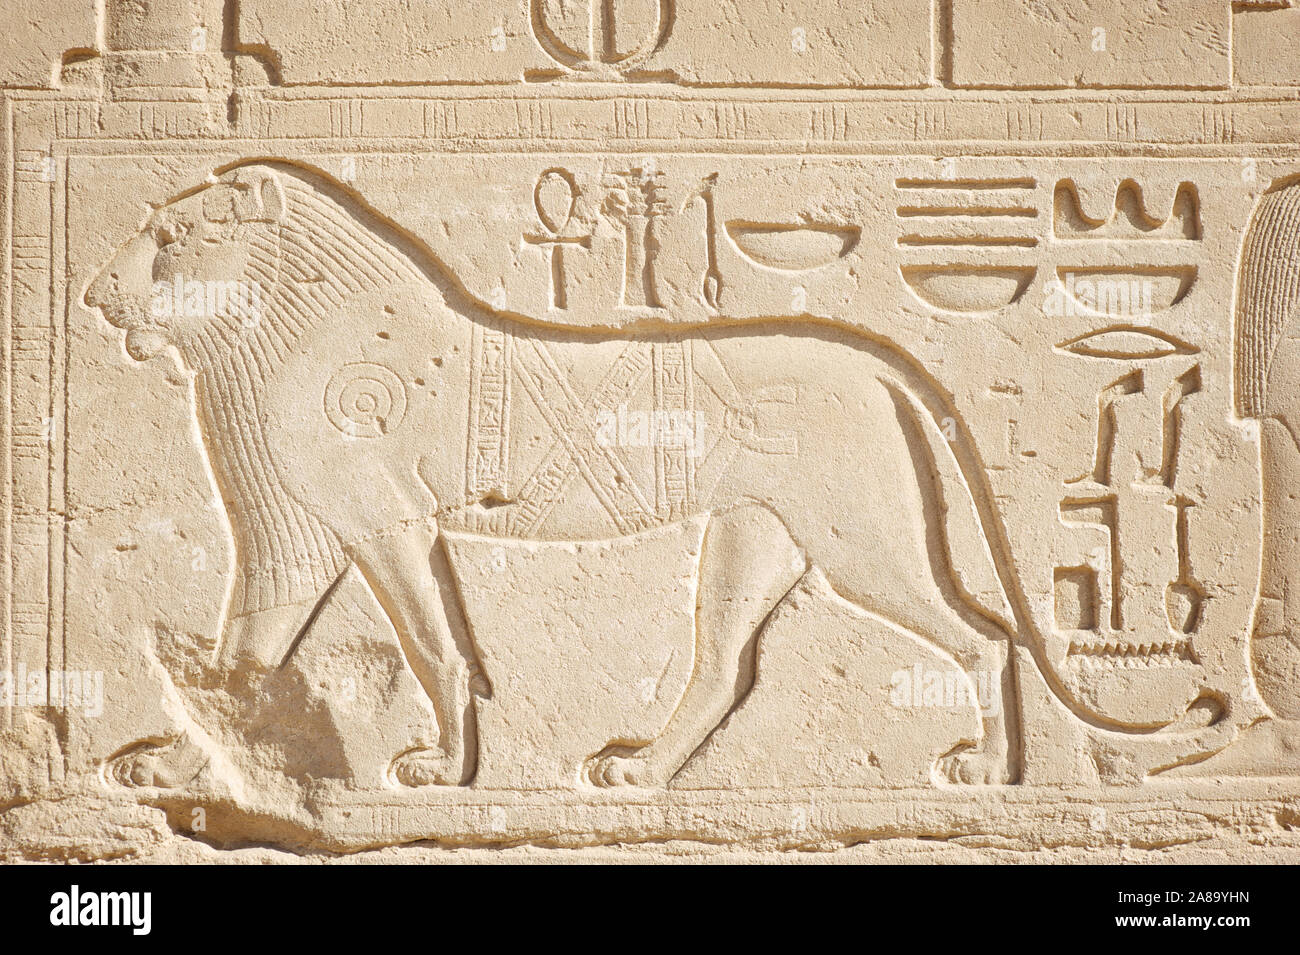 Profil élégant de l'homme lion sculpté dans un hiéroglyphe sur la lumière pierre au temple égyptien de Karnak, Egypte Banque D'Images